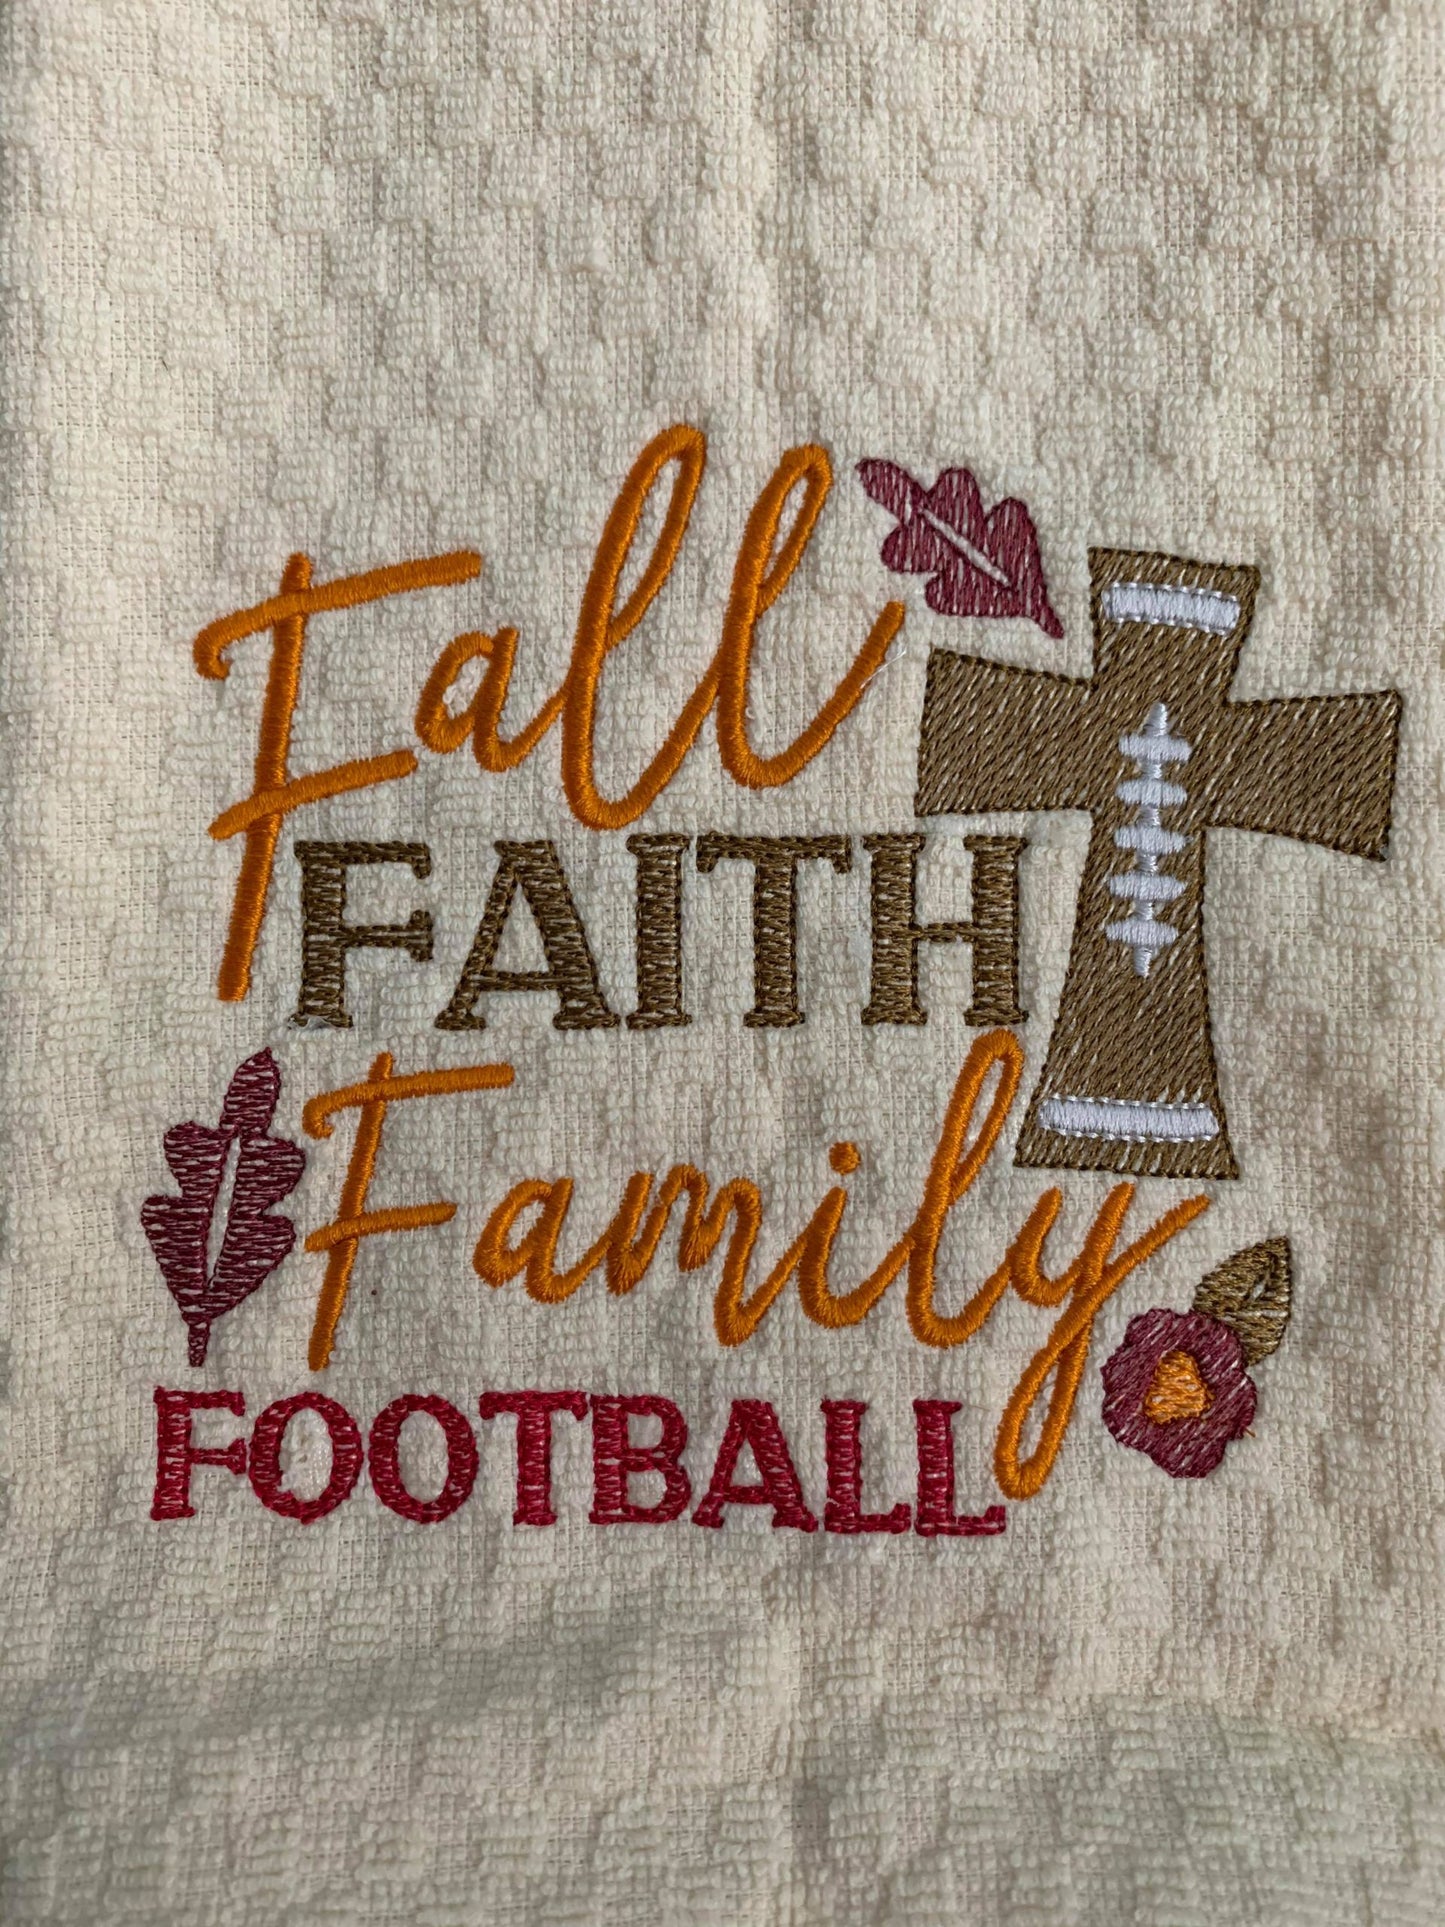 Fall Faith Family Football - 2 Sizes - Digital Embroidery Design